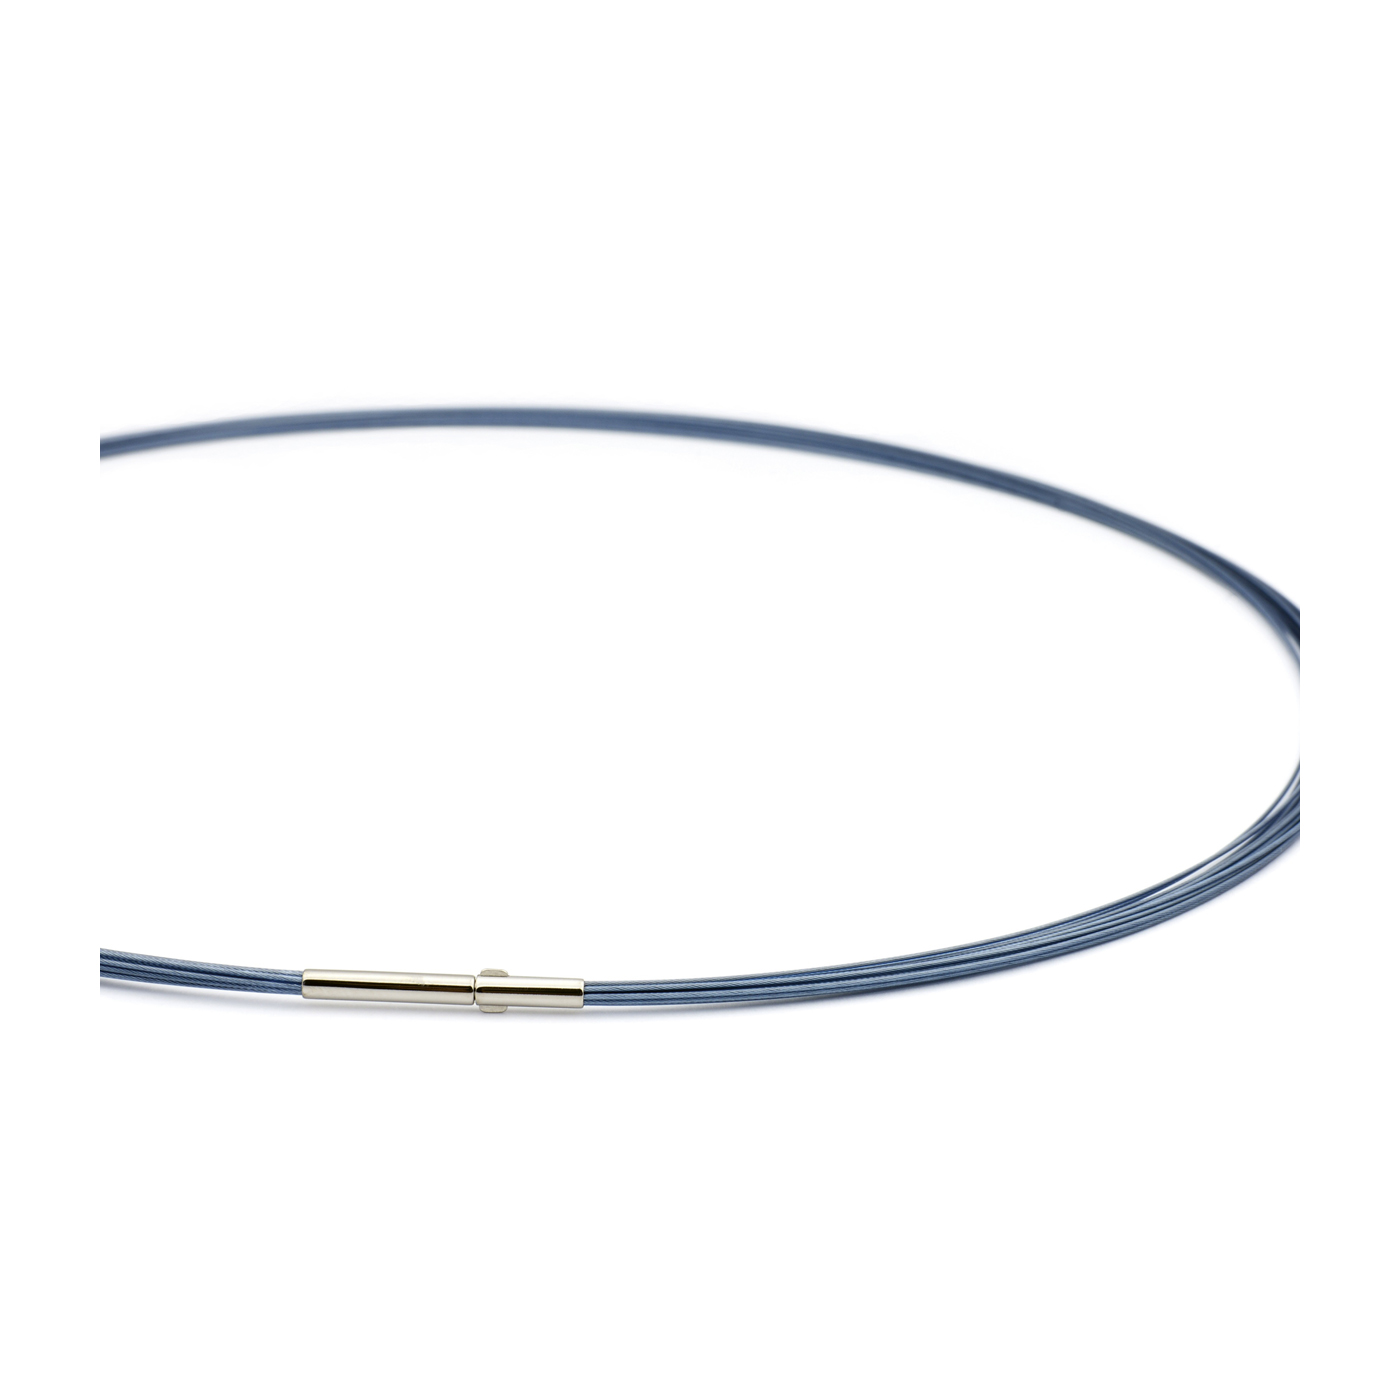 Seilcollier "Colour Cable", ES, montana-blau, 12-reihig,45cm - 1 Stück